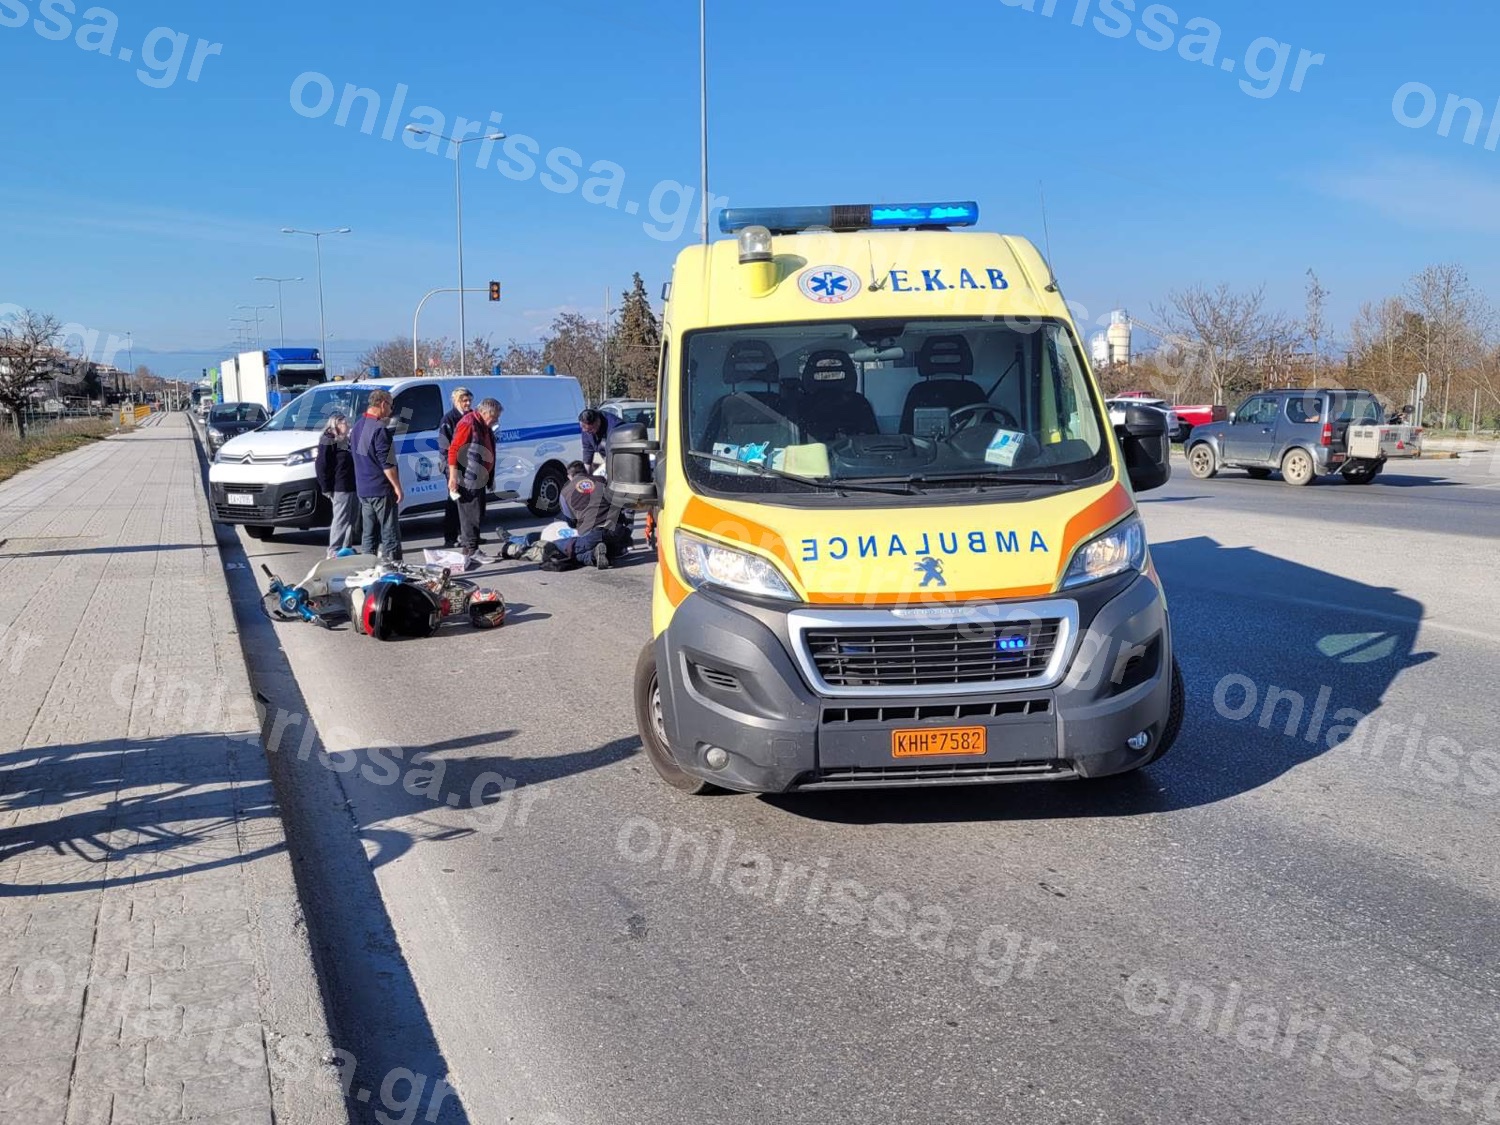 Αυτοκίνητο χτυπήθηκε από μοτοσικλέτα – άνδρας στο νοσοκομείο (εικόνες)